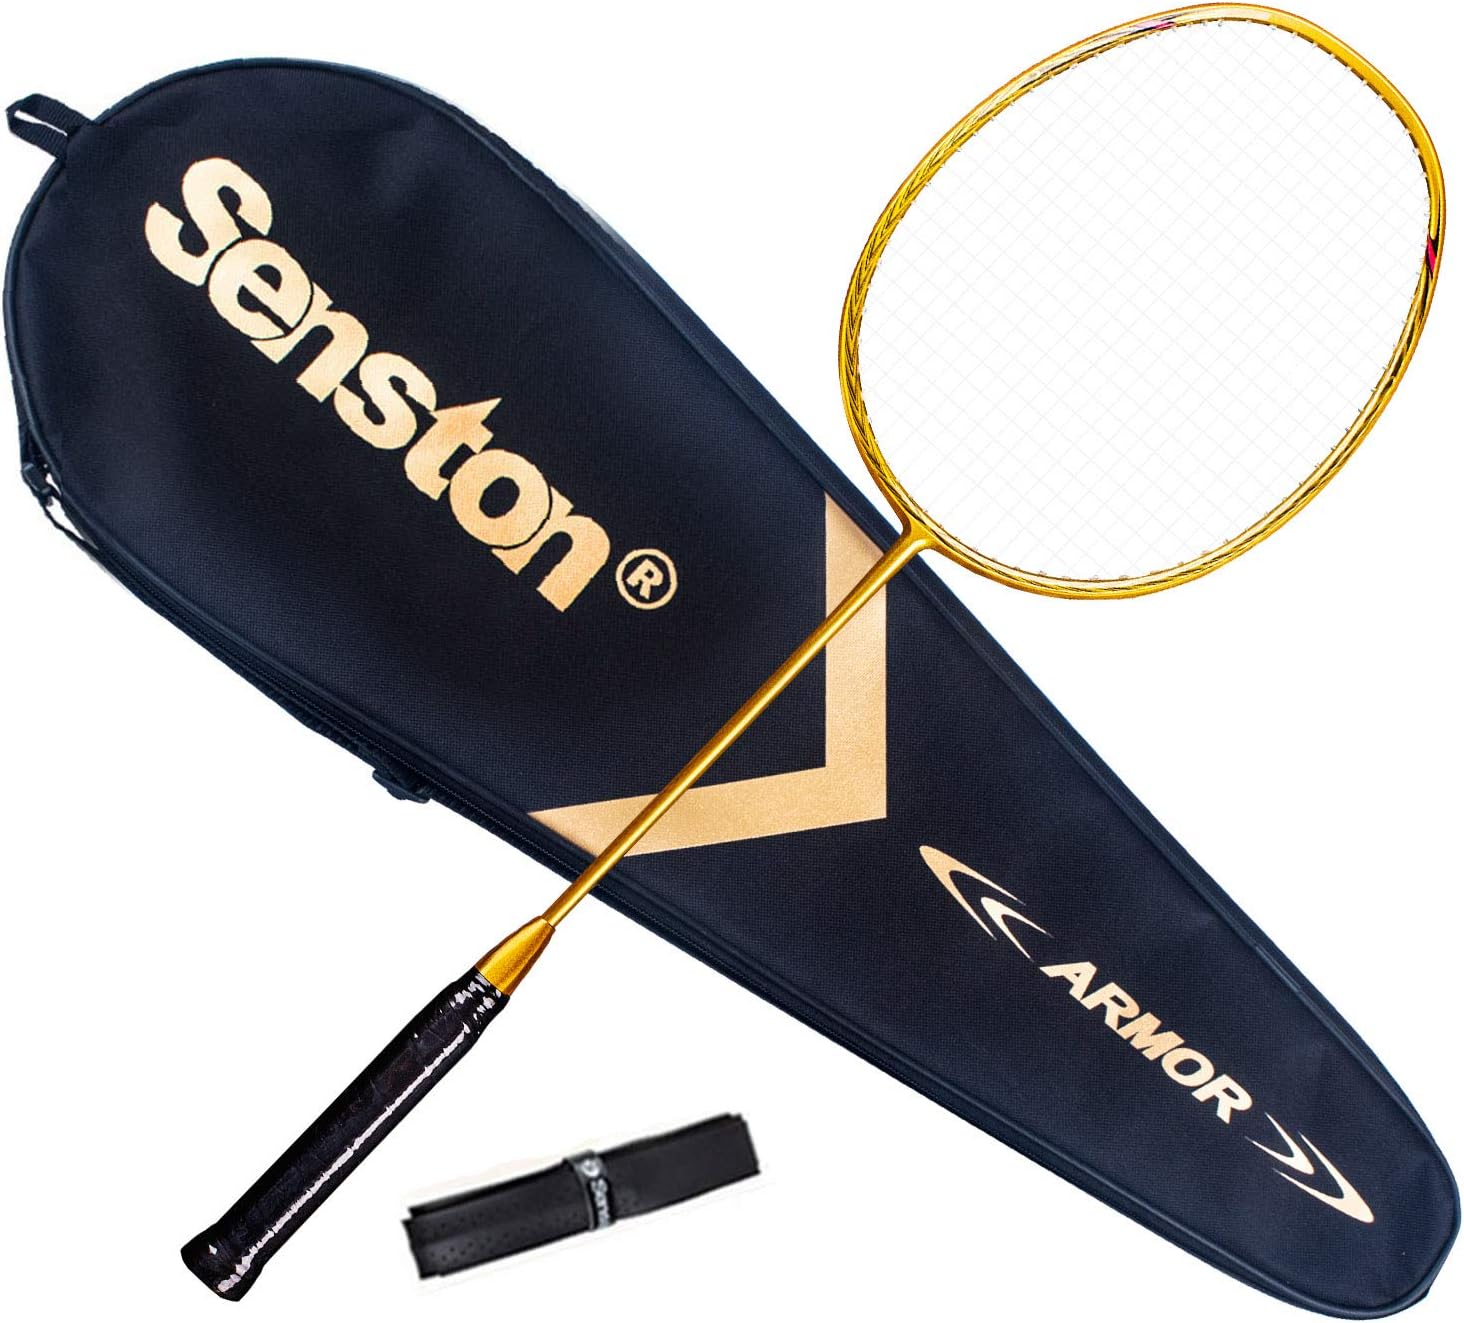 68g Badminton Racquet Light Racket Set Carbon Fiber 7u Best Tournament Single Shuttle Bat Carrying Bag